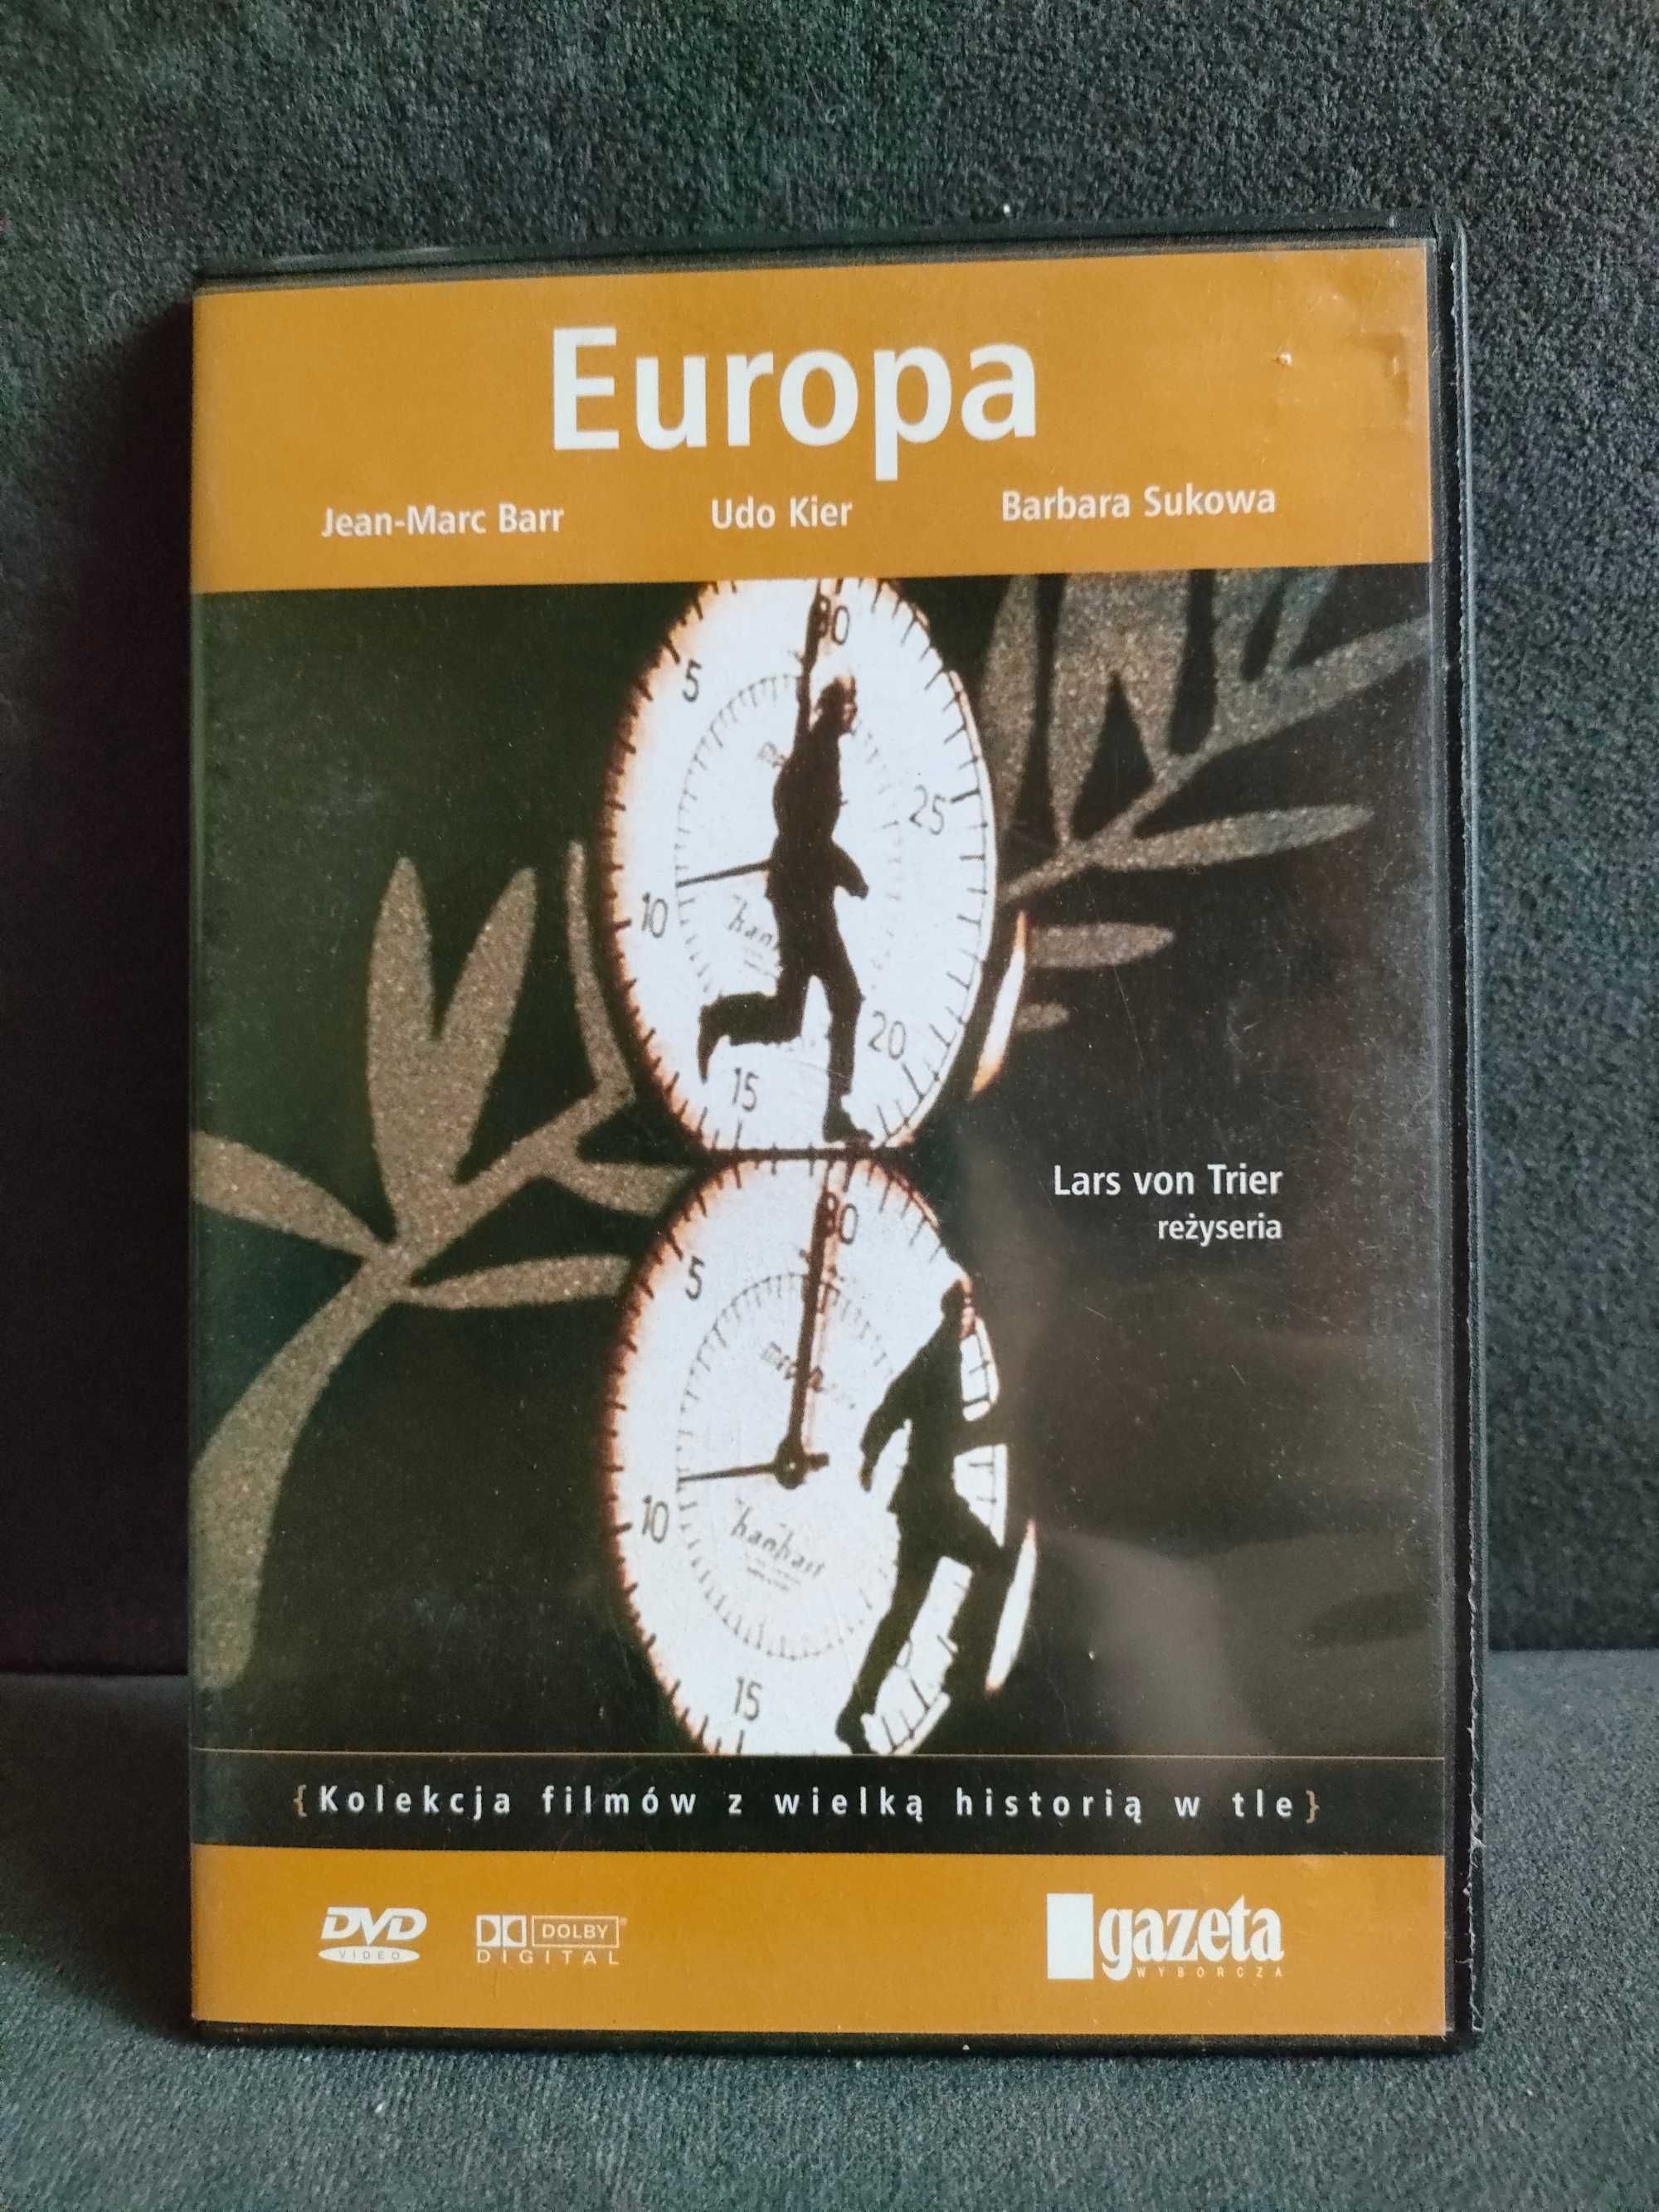 Film DVD "Europa" Lars von Trier